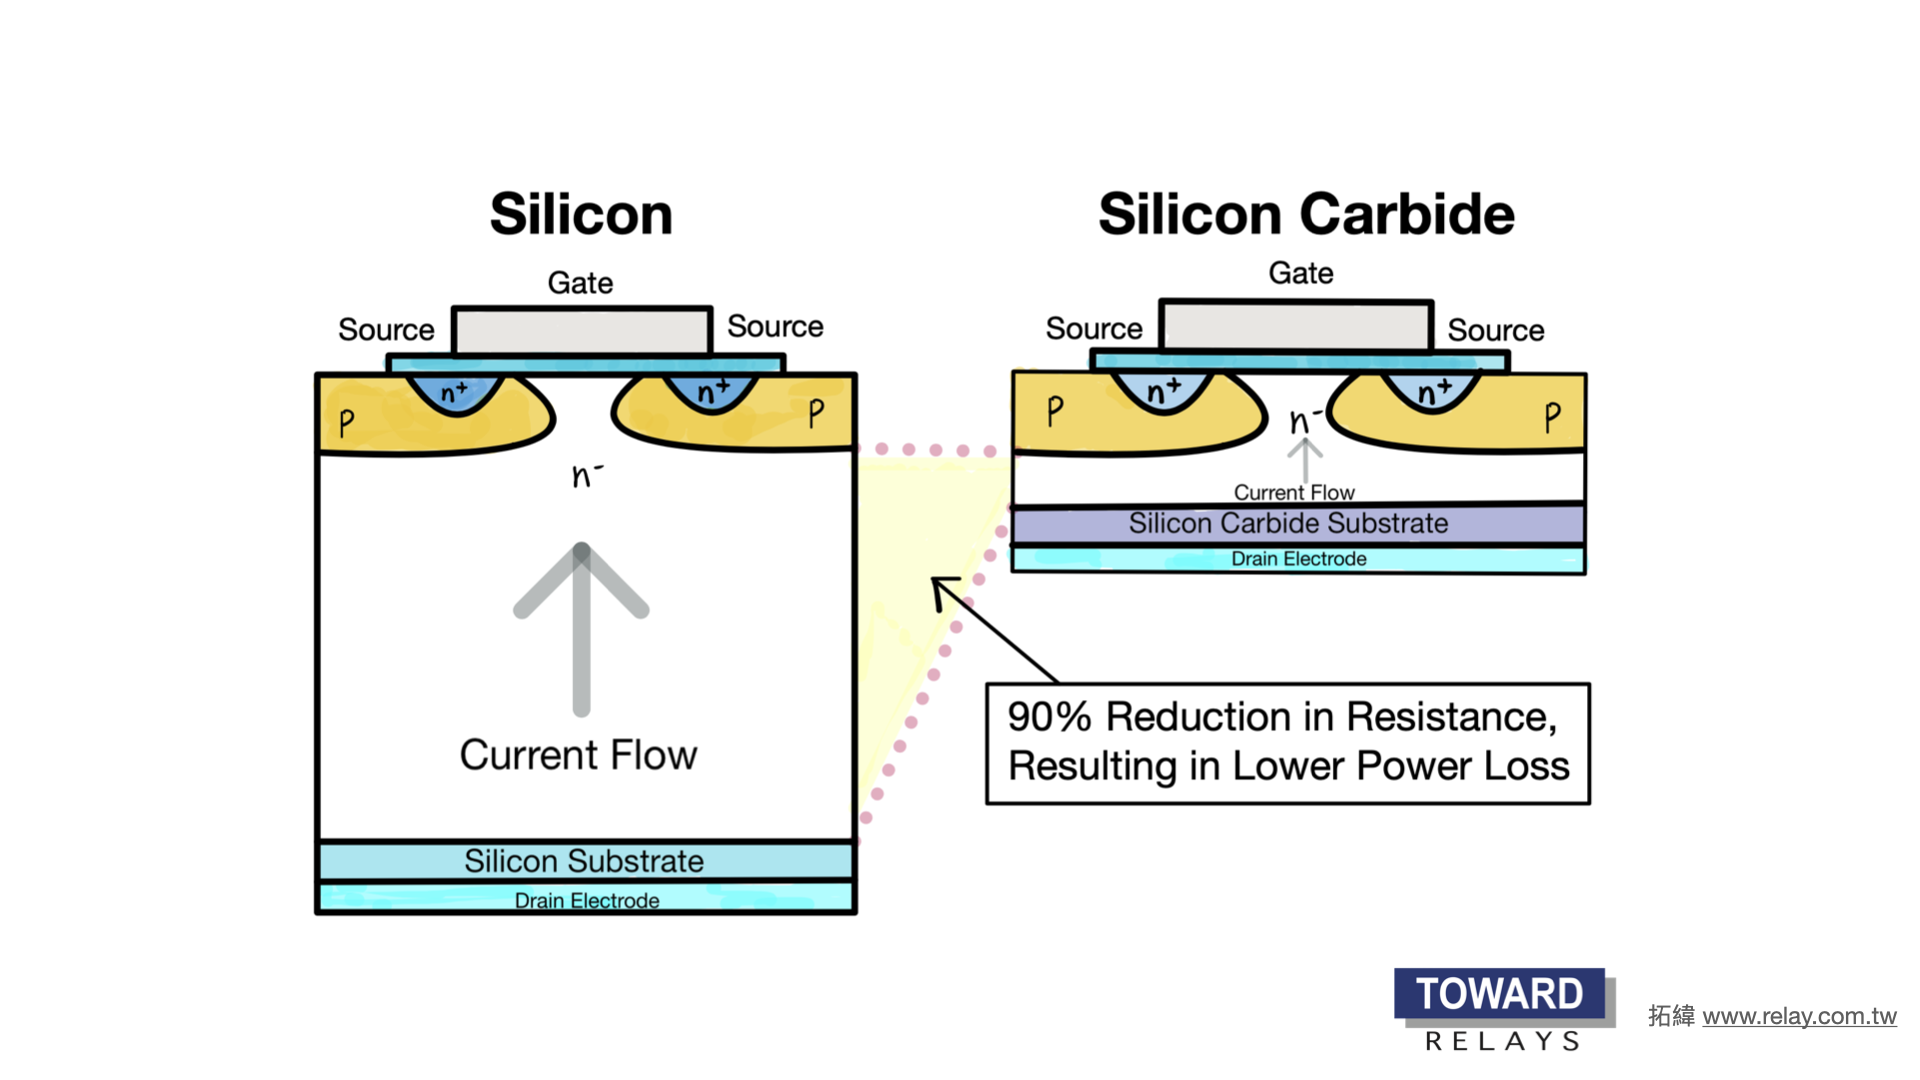 SiC é um semicondutor de banda larga que pode suportar milhares de volts e altas temperaturas (mais de 175C). Componentes de SiC podem funcionar de forma eficiente em frequências mais altas sem perdas desnecessárias, como IGBT e MOSFET baseados em Si. SiC também possui menor resistência em estado ativo em tensões mais altas.